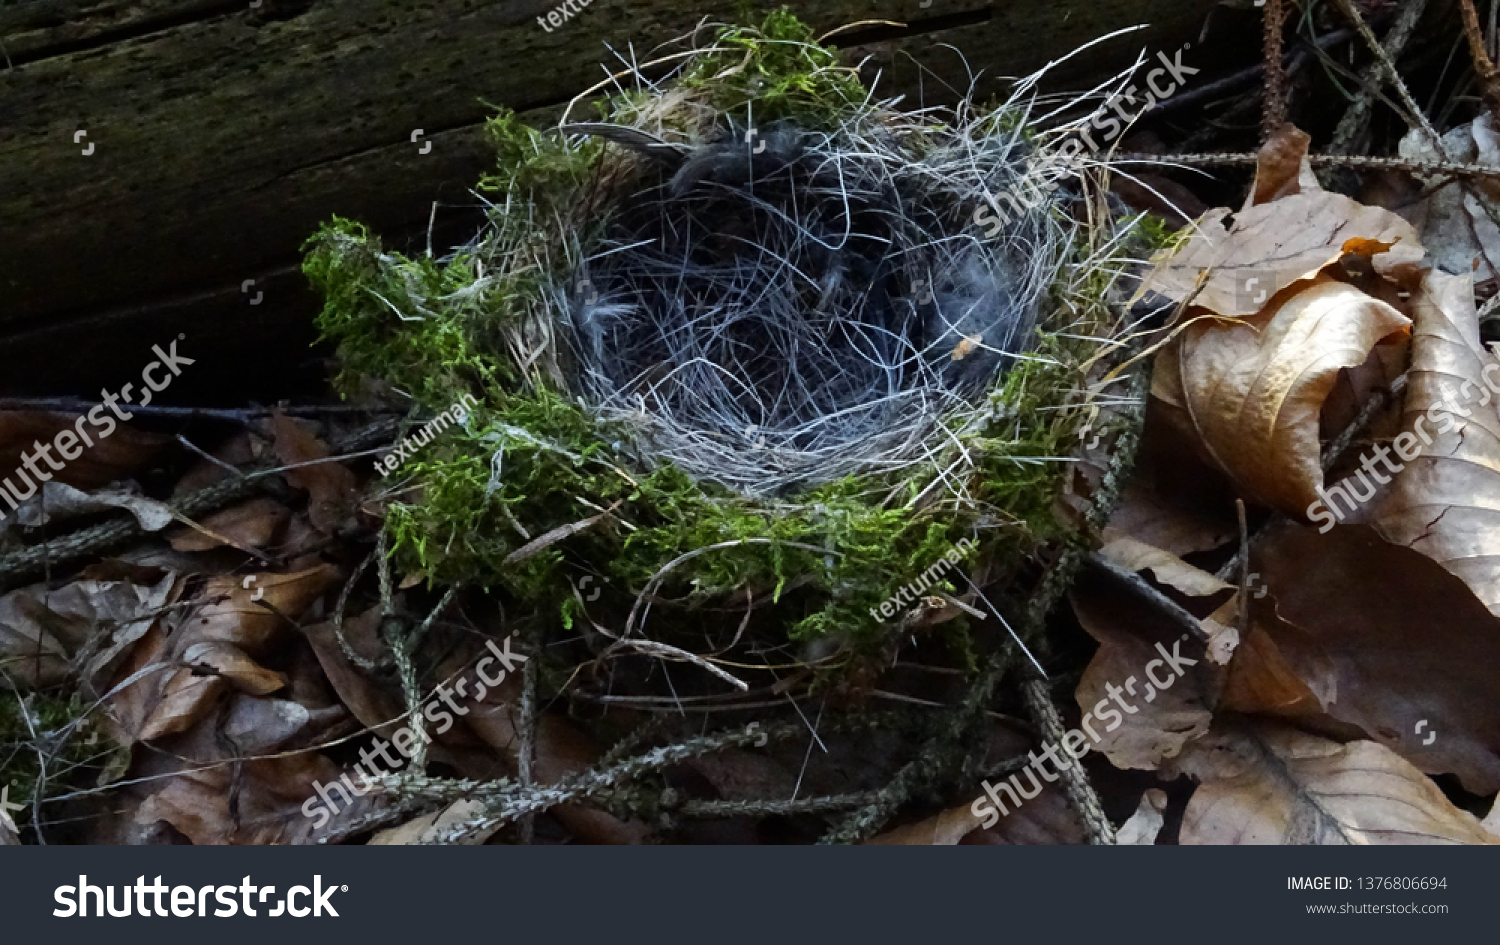 empty bird nest in forest #1376806694